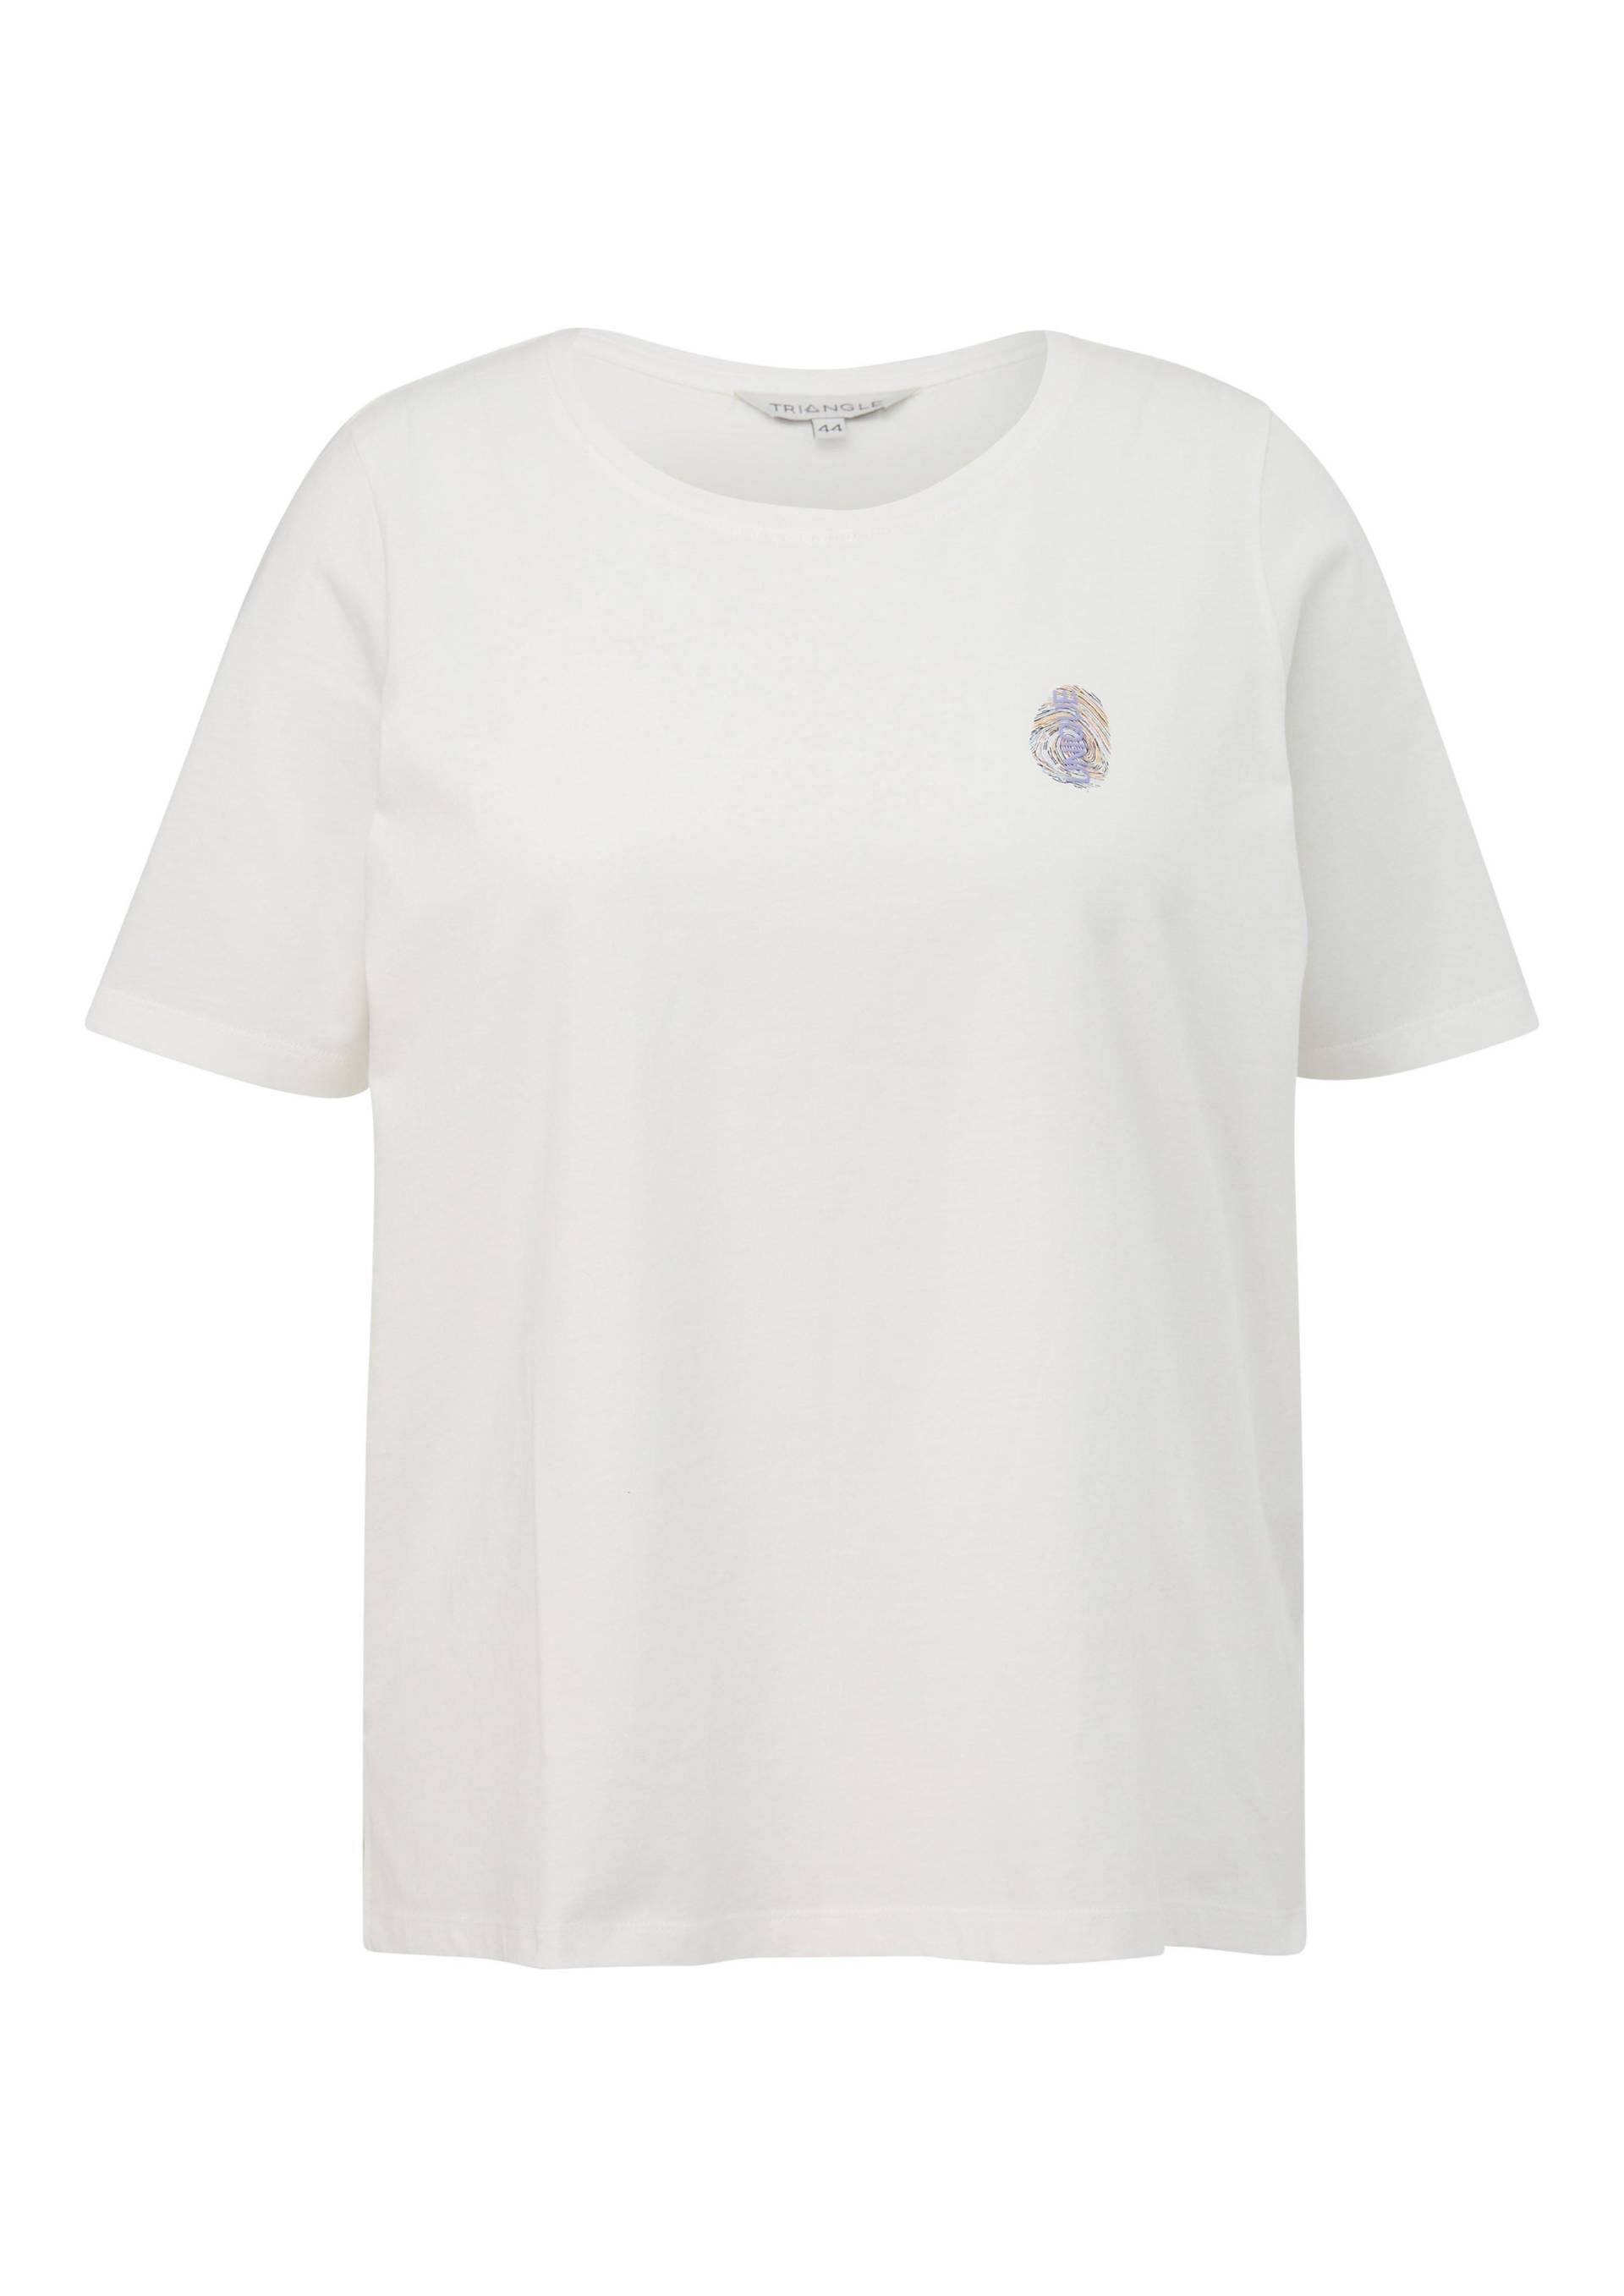 Große Größen: T-Shirt mit Rundhals und kleinem Print, weiß, Gr.44-54 von Triangle